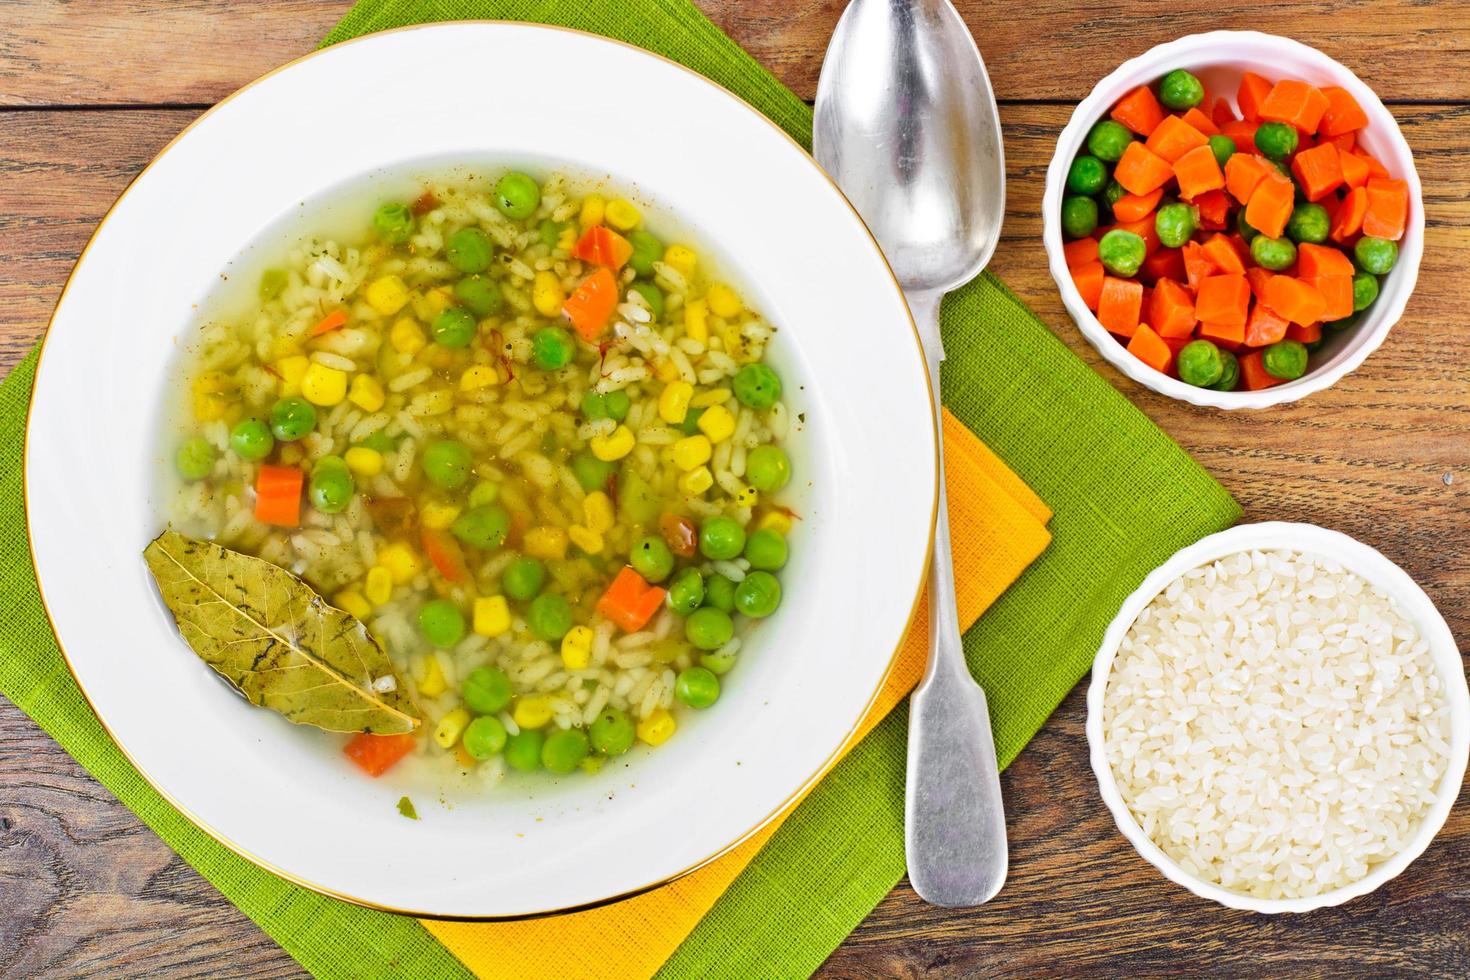 soupe au bouillon de poulet. riz et légumes photo